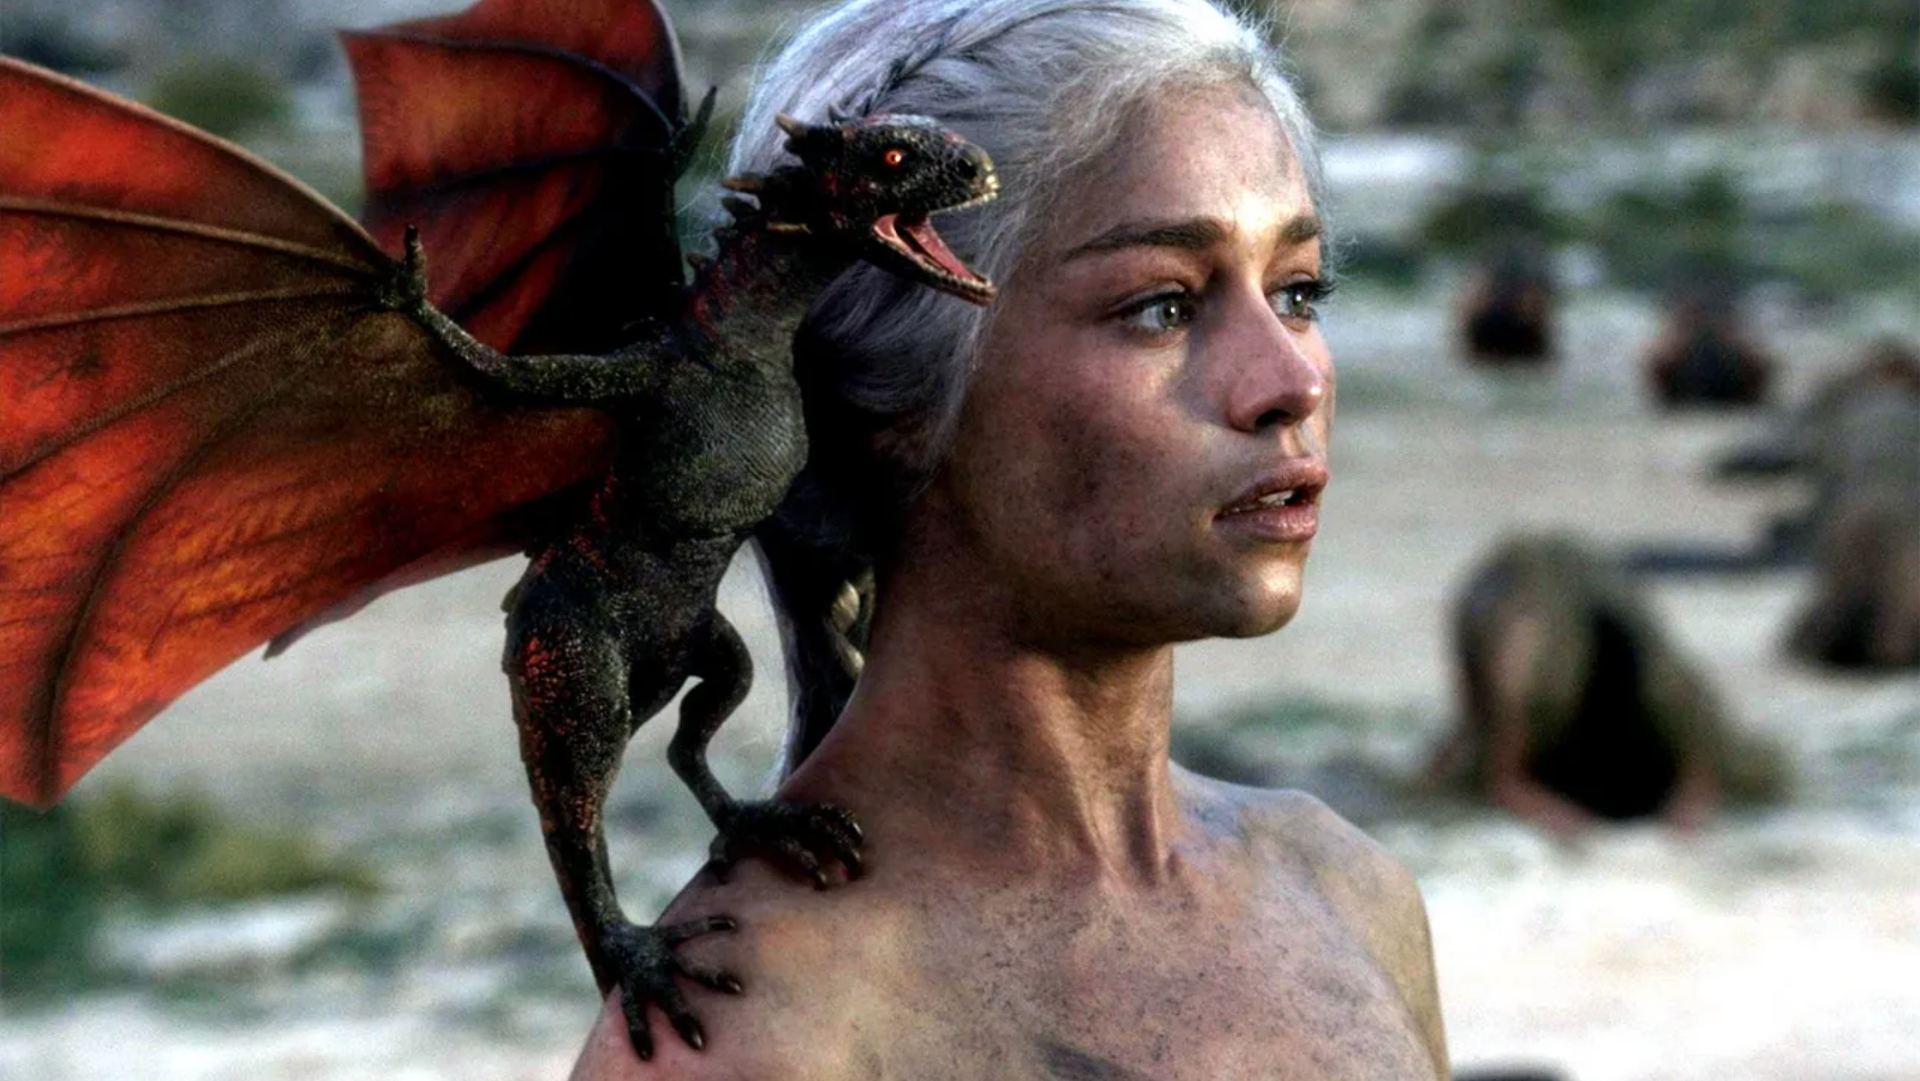 Game of Thrones Gift Set (Daenerys Targaryen & Drogon)